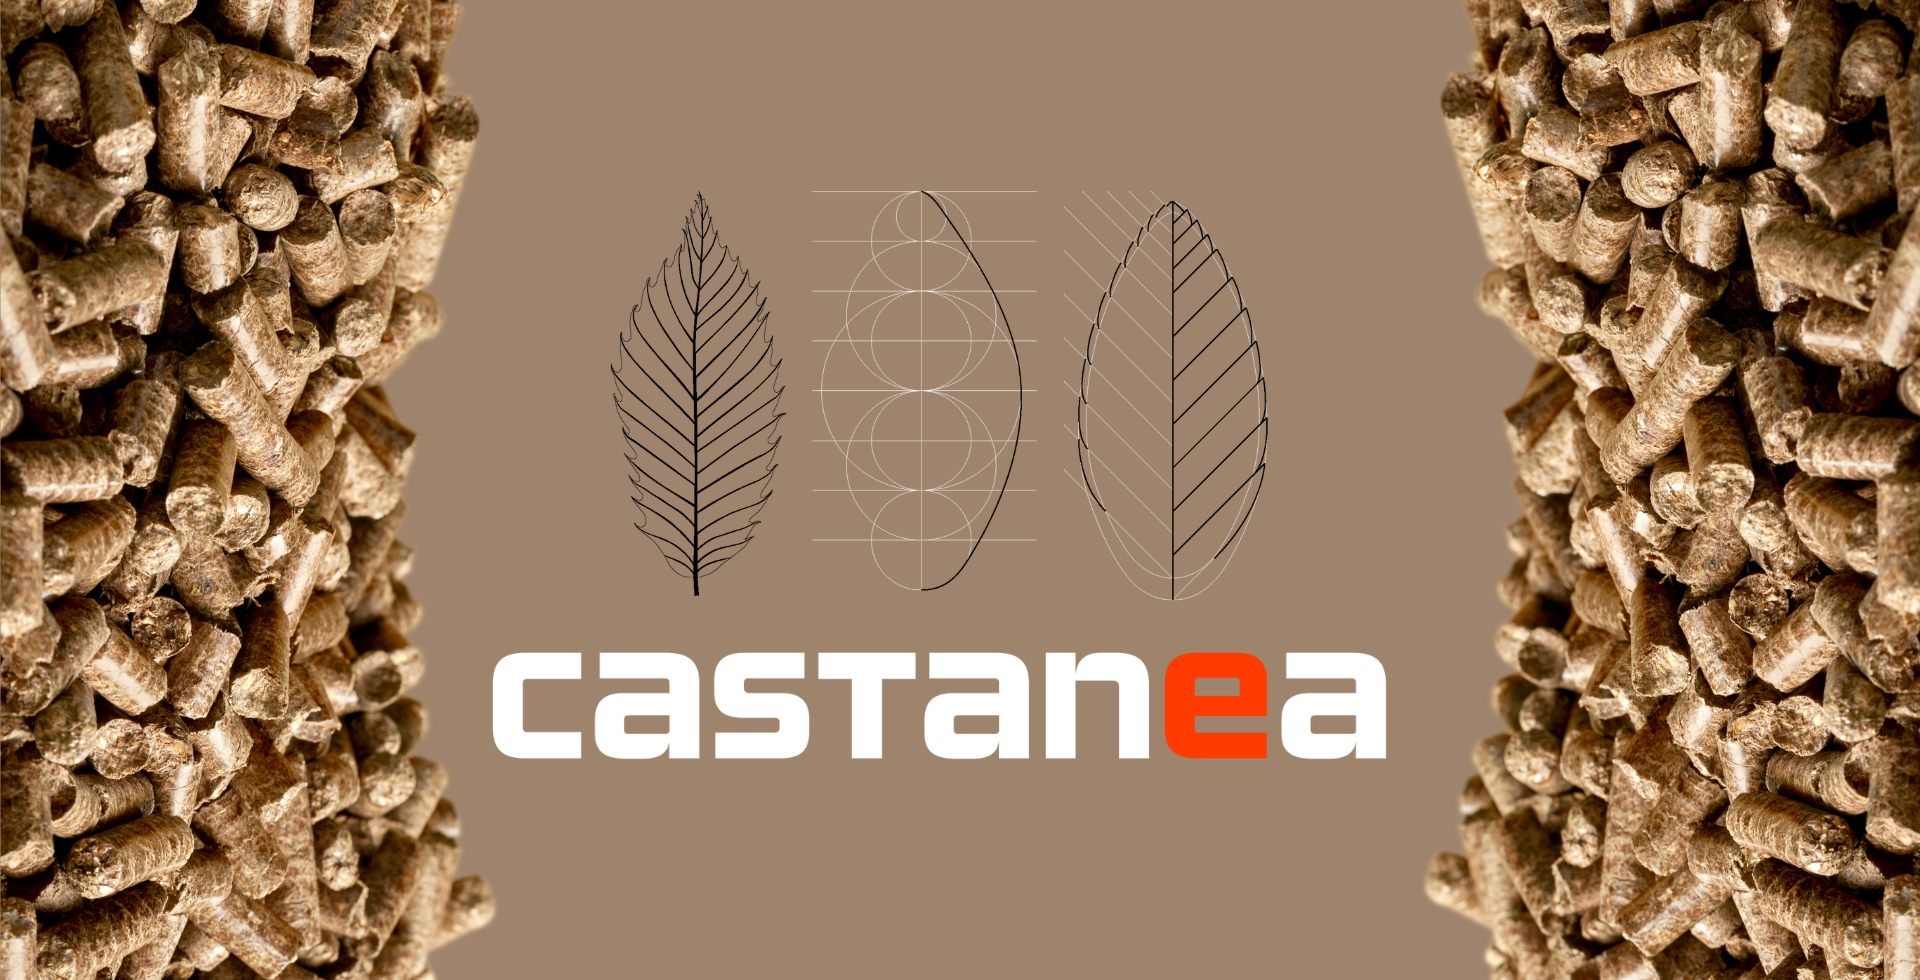 Innovazione Digitale per la tradizione sostenibile: Castanea Pellet lancia il nuovo sito web per promuovere il Pellet di Castagno